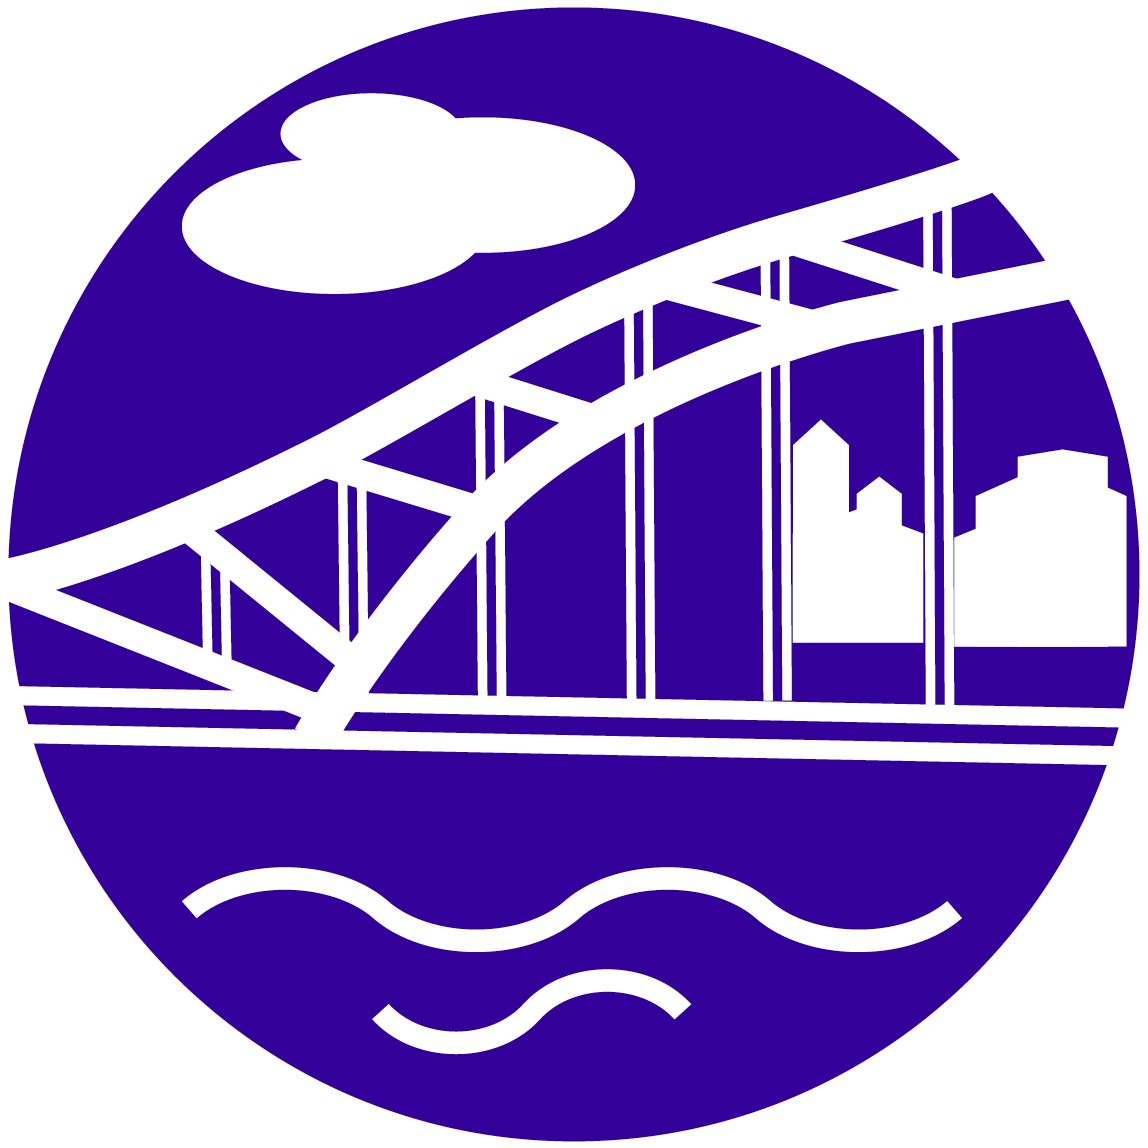 Masinotek kaupunki- ja kuntainfra ikoni violetilla pohjalla.